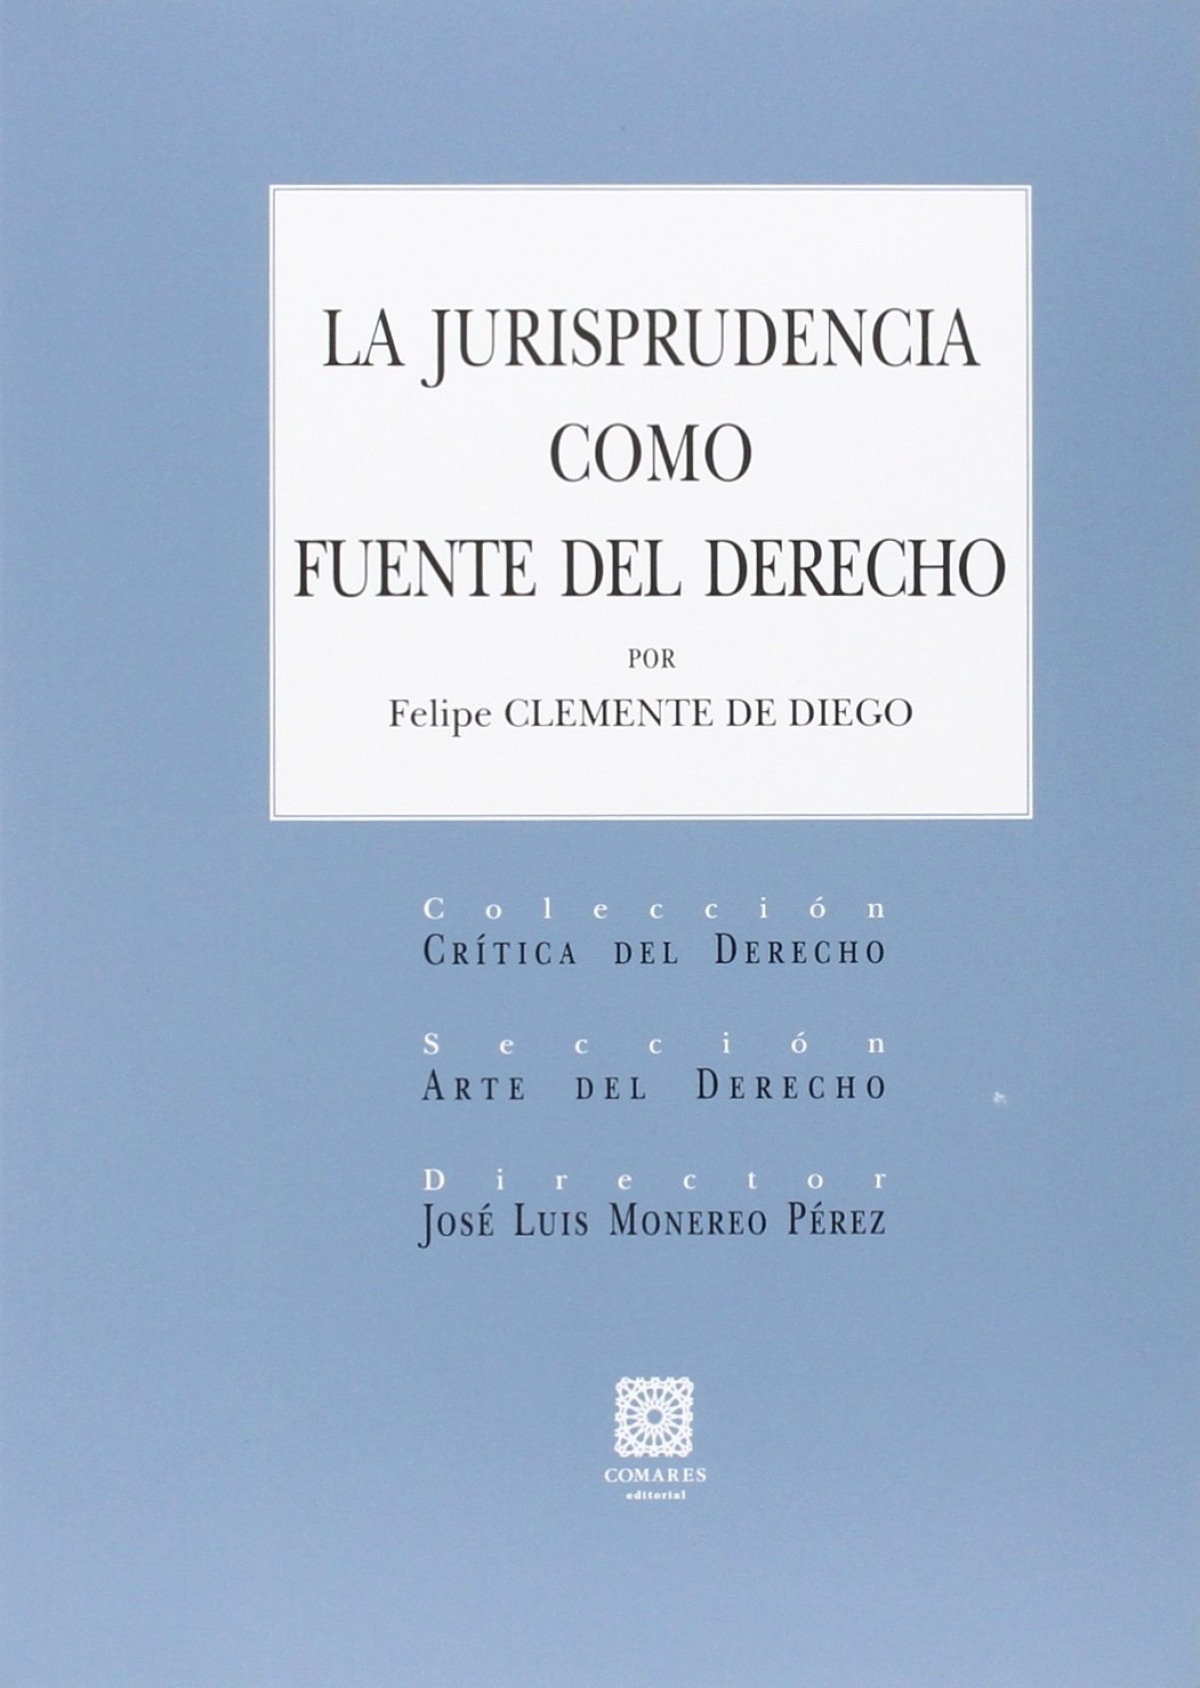 La jurisprudencia como fuente del derecho - Clemente Diego, Felipe